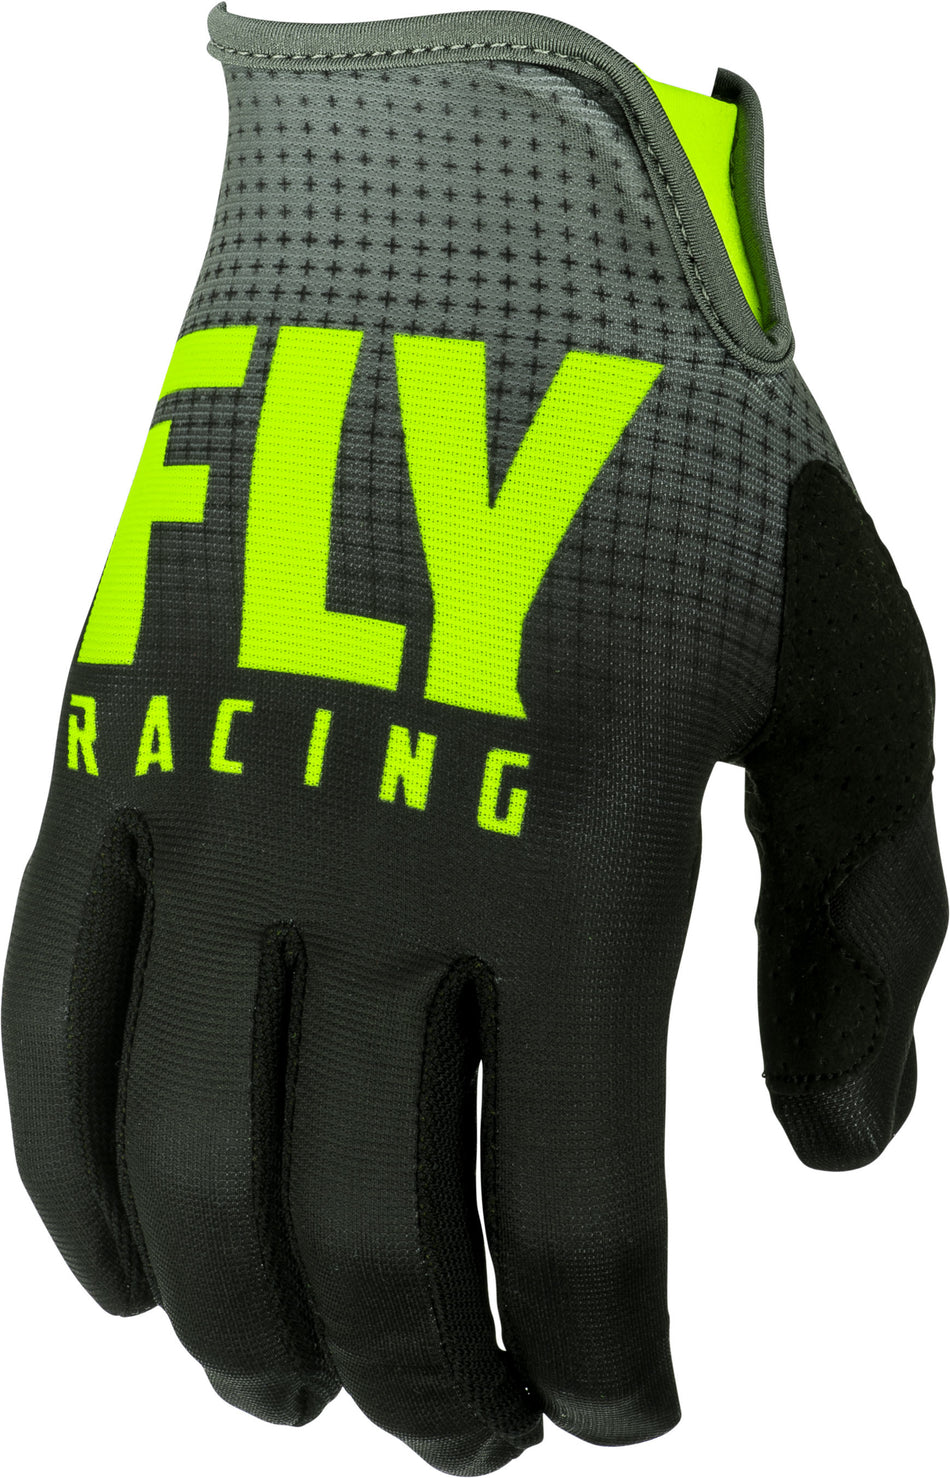 FLY RACING Lite Gloves Black/Hi-Vis Sz 12 372-01012